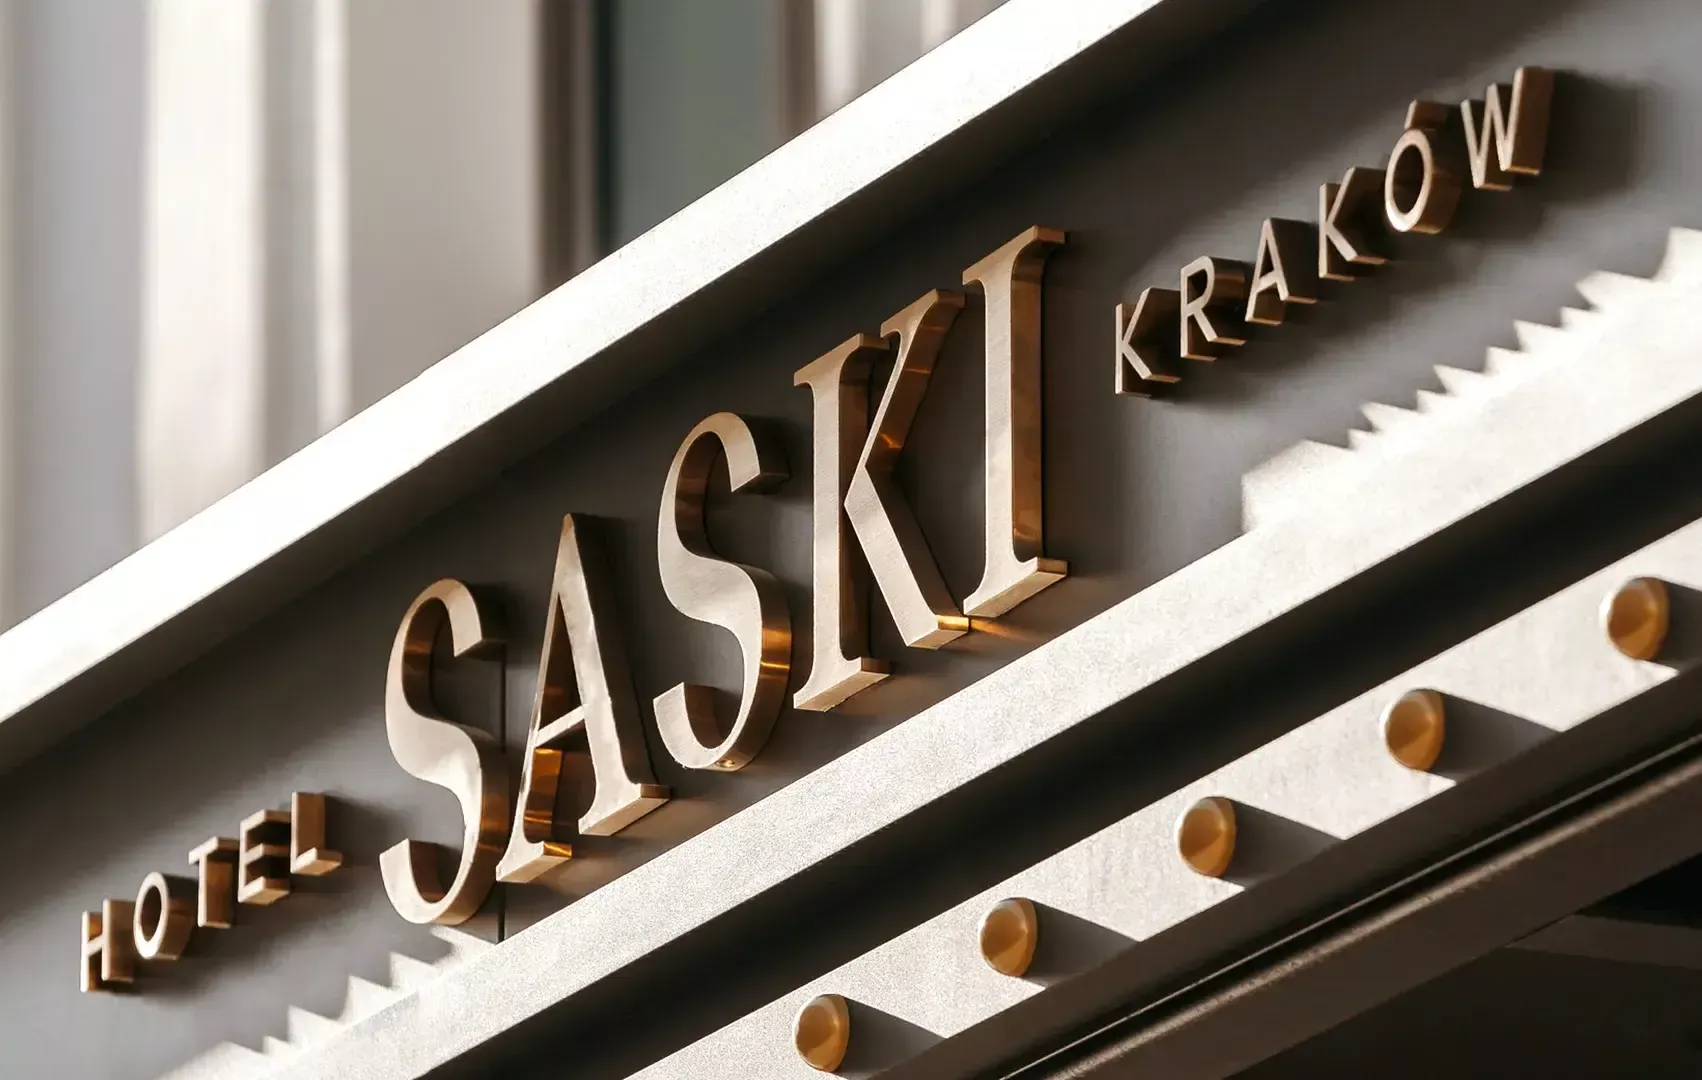 Hotel Saski - Letras de acero inoxidable cepillado en oro en el exterior del edificio del Hotel Saski